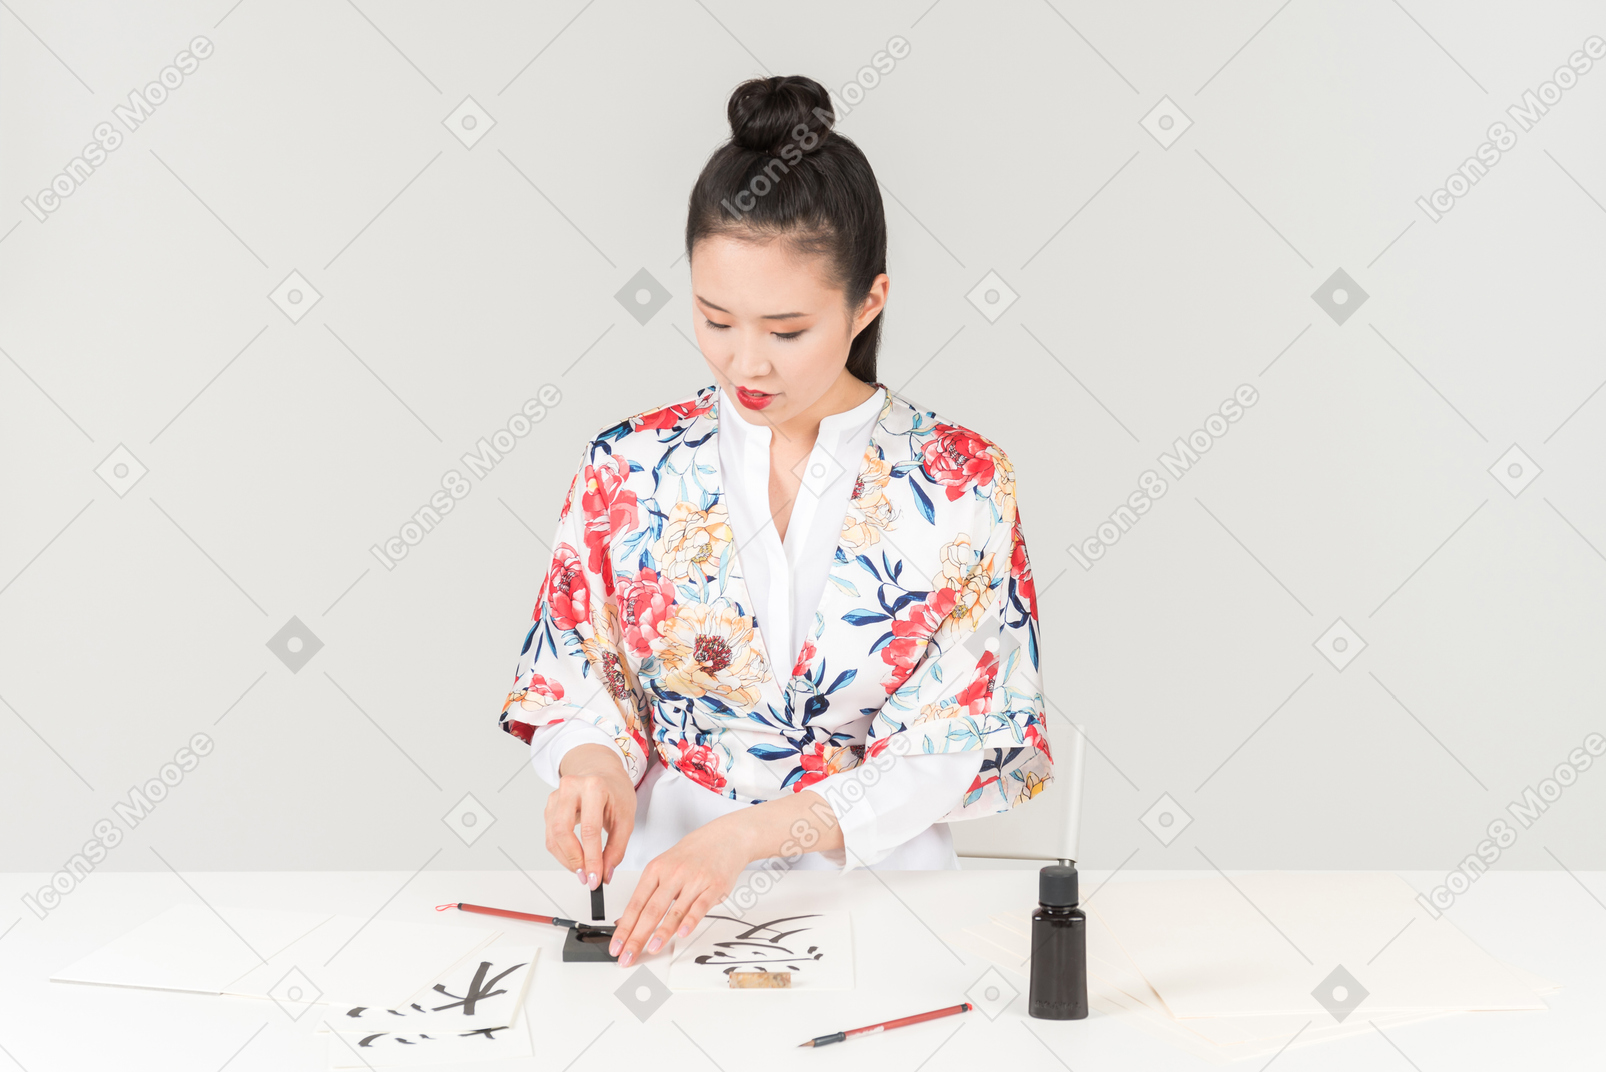 多彩的日本和服的年轻女子通过绘制象形文字学习书法